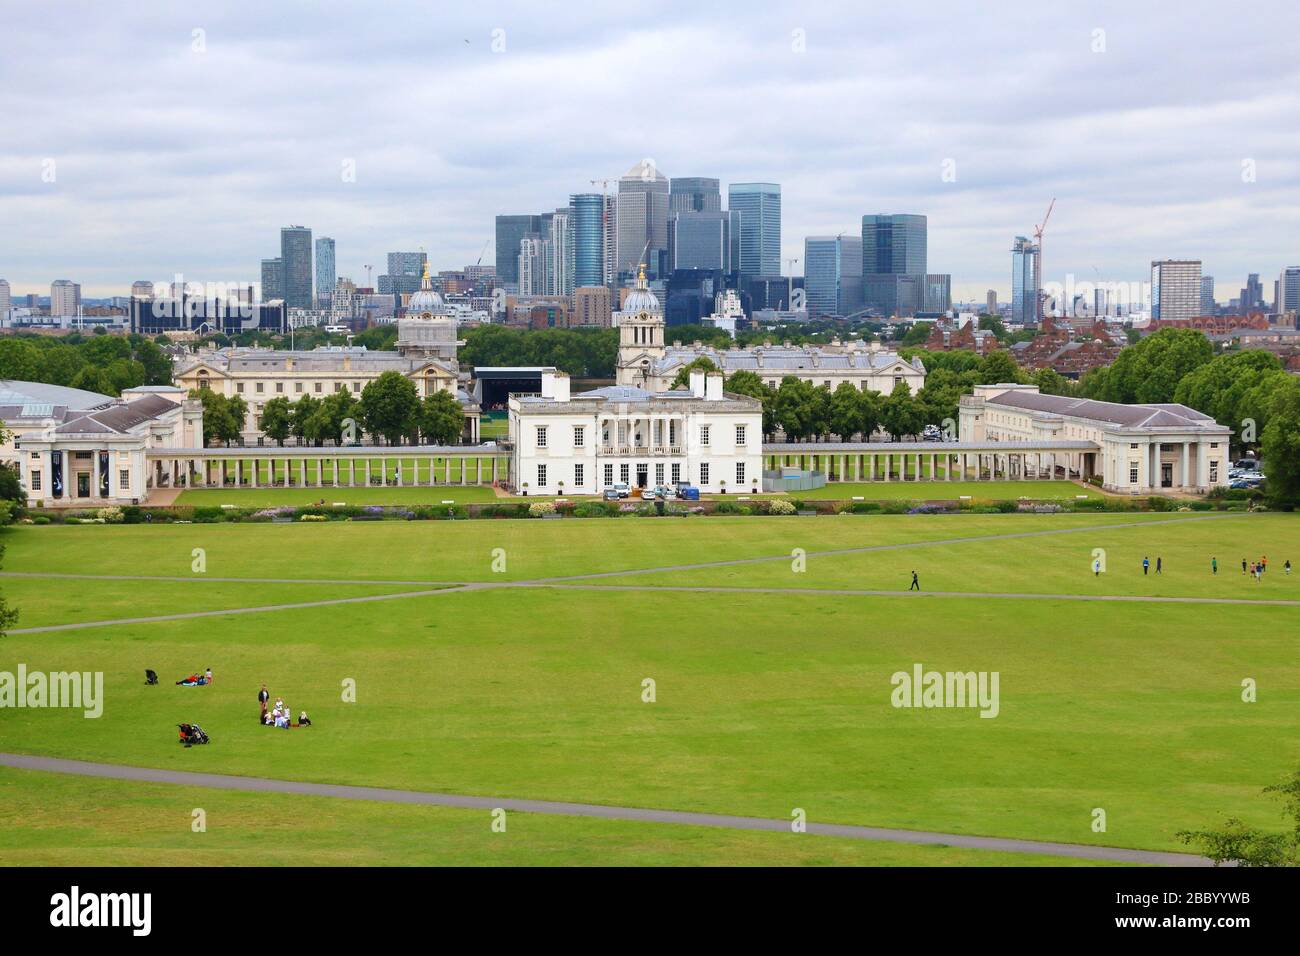 Lo skyline di Londra - La città capitale del Regno Unito. Canary Wharf e Greenwich. UNESCO - Sito Patrimonio dell'umanità. Foto Stock